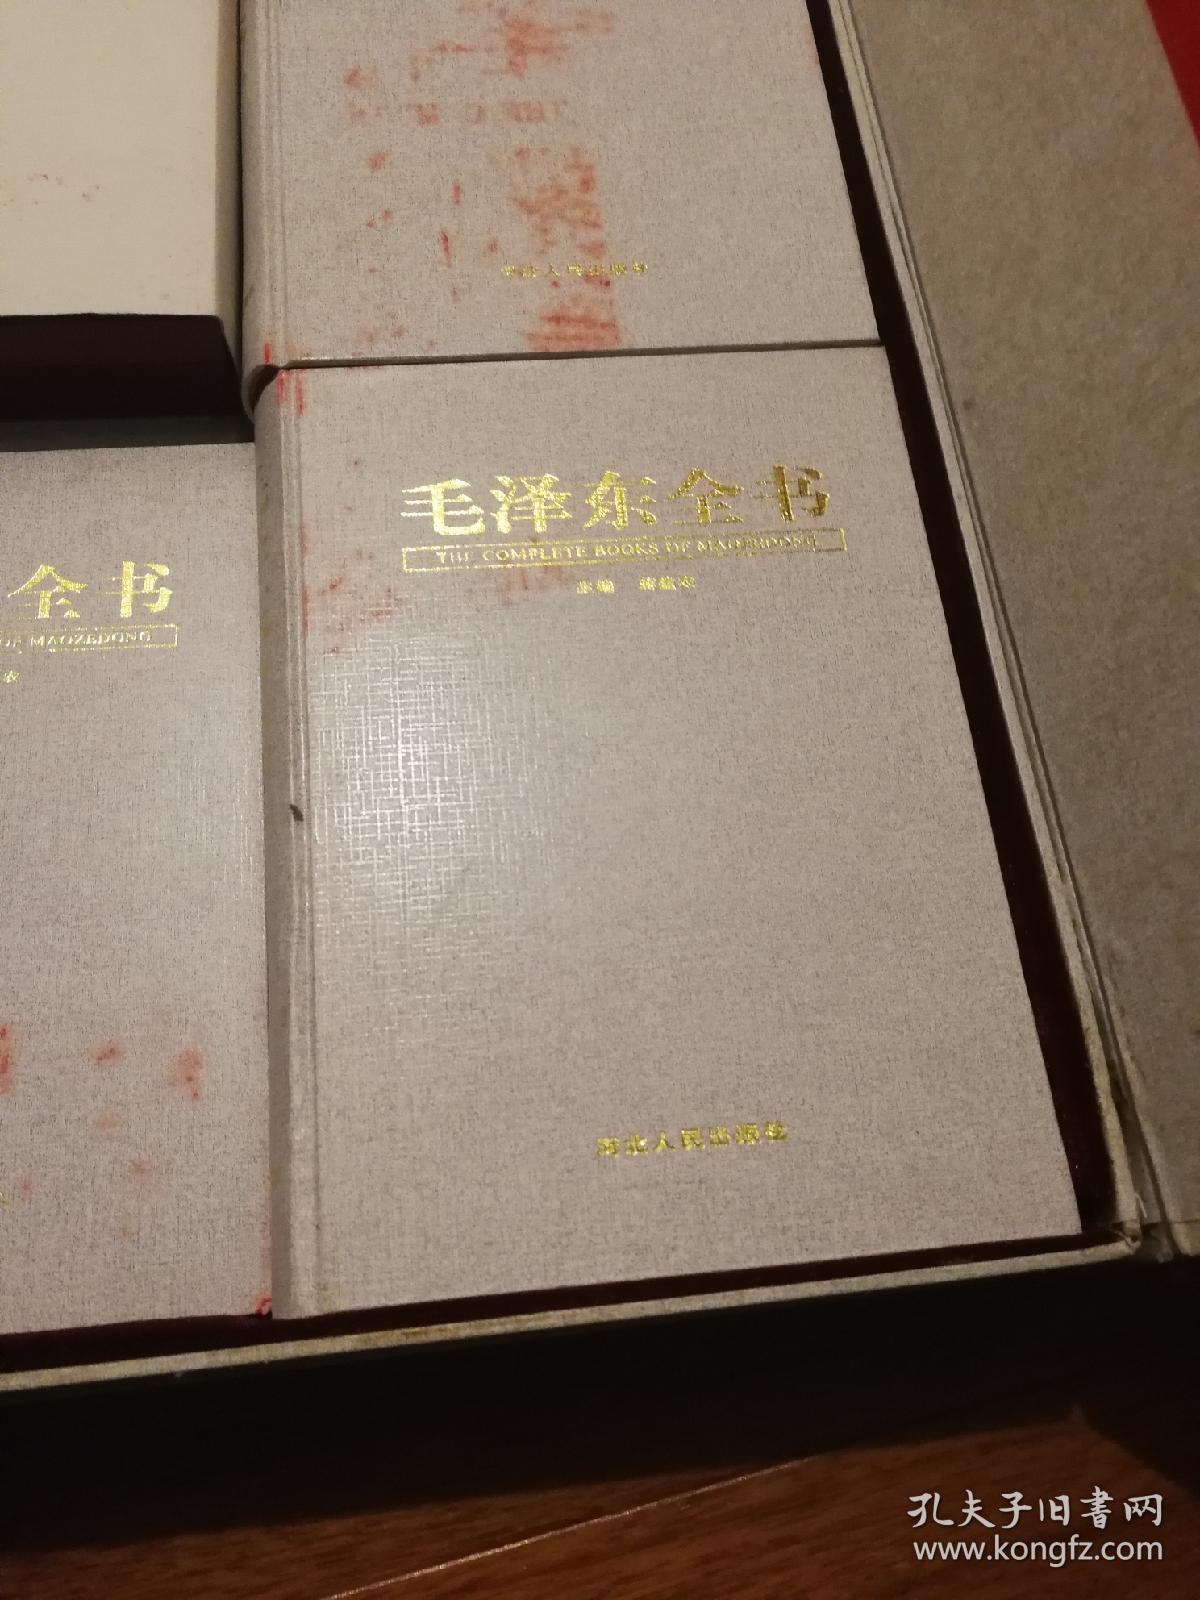 毛泽东全书 （全套礼盒装，带珍藏金卡等纪念品）蒋建农主编 河北人民出版社